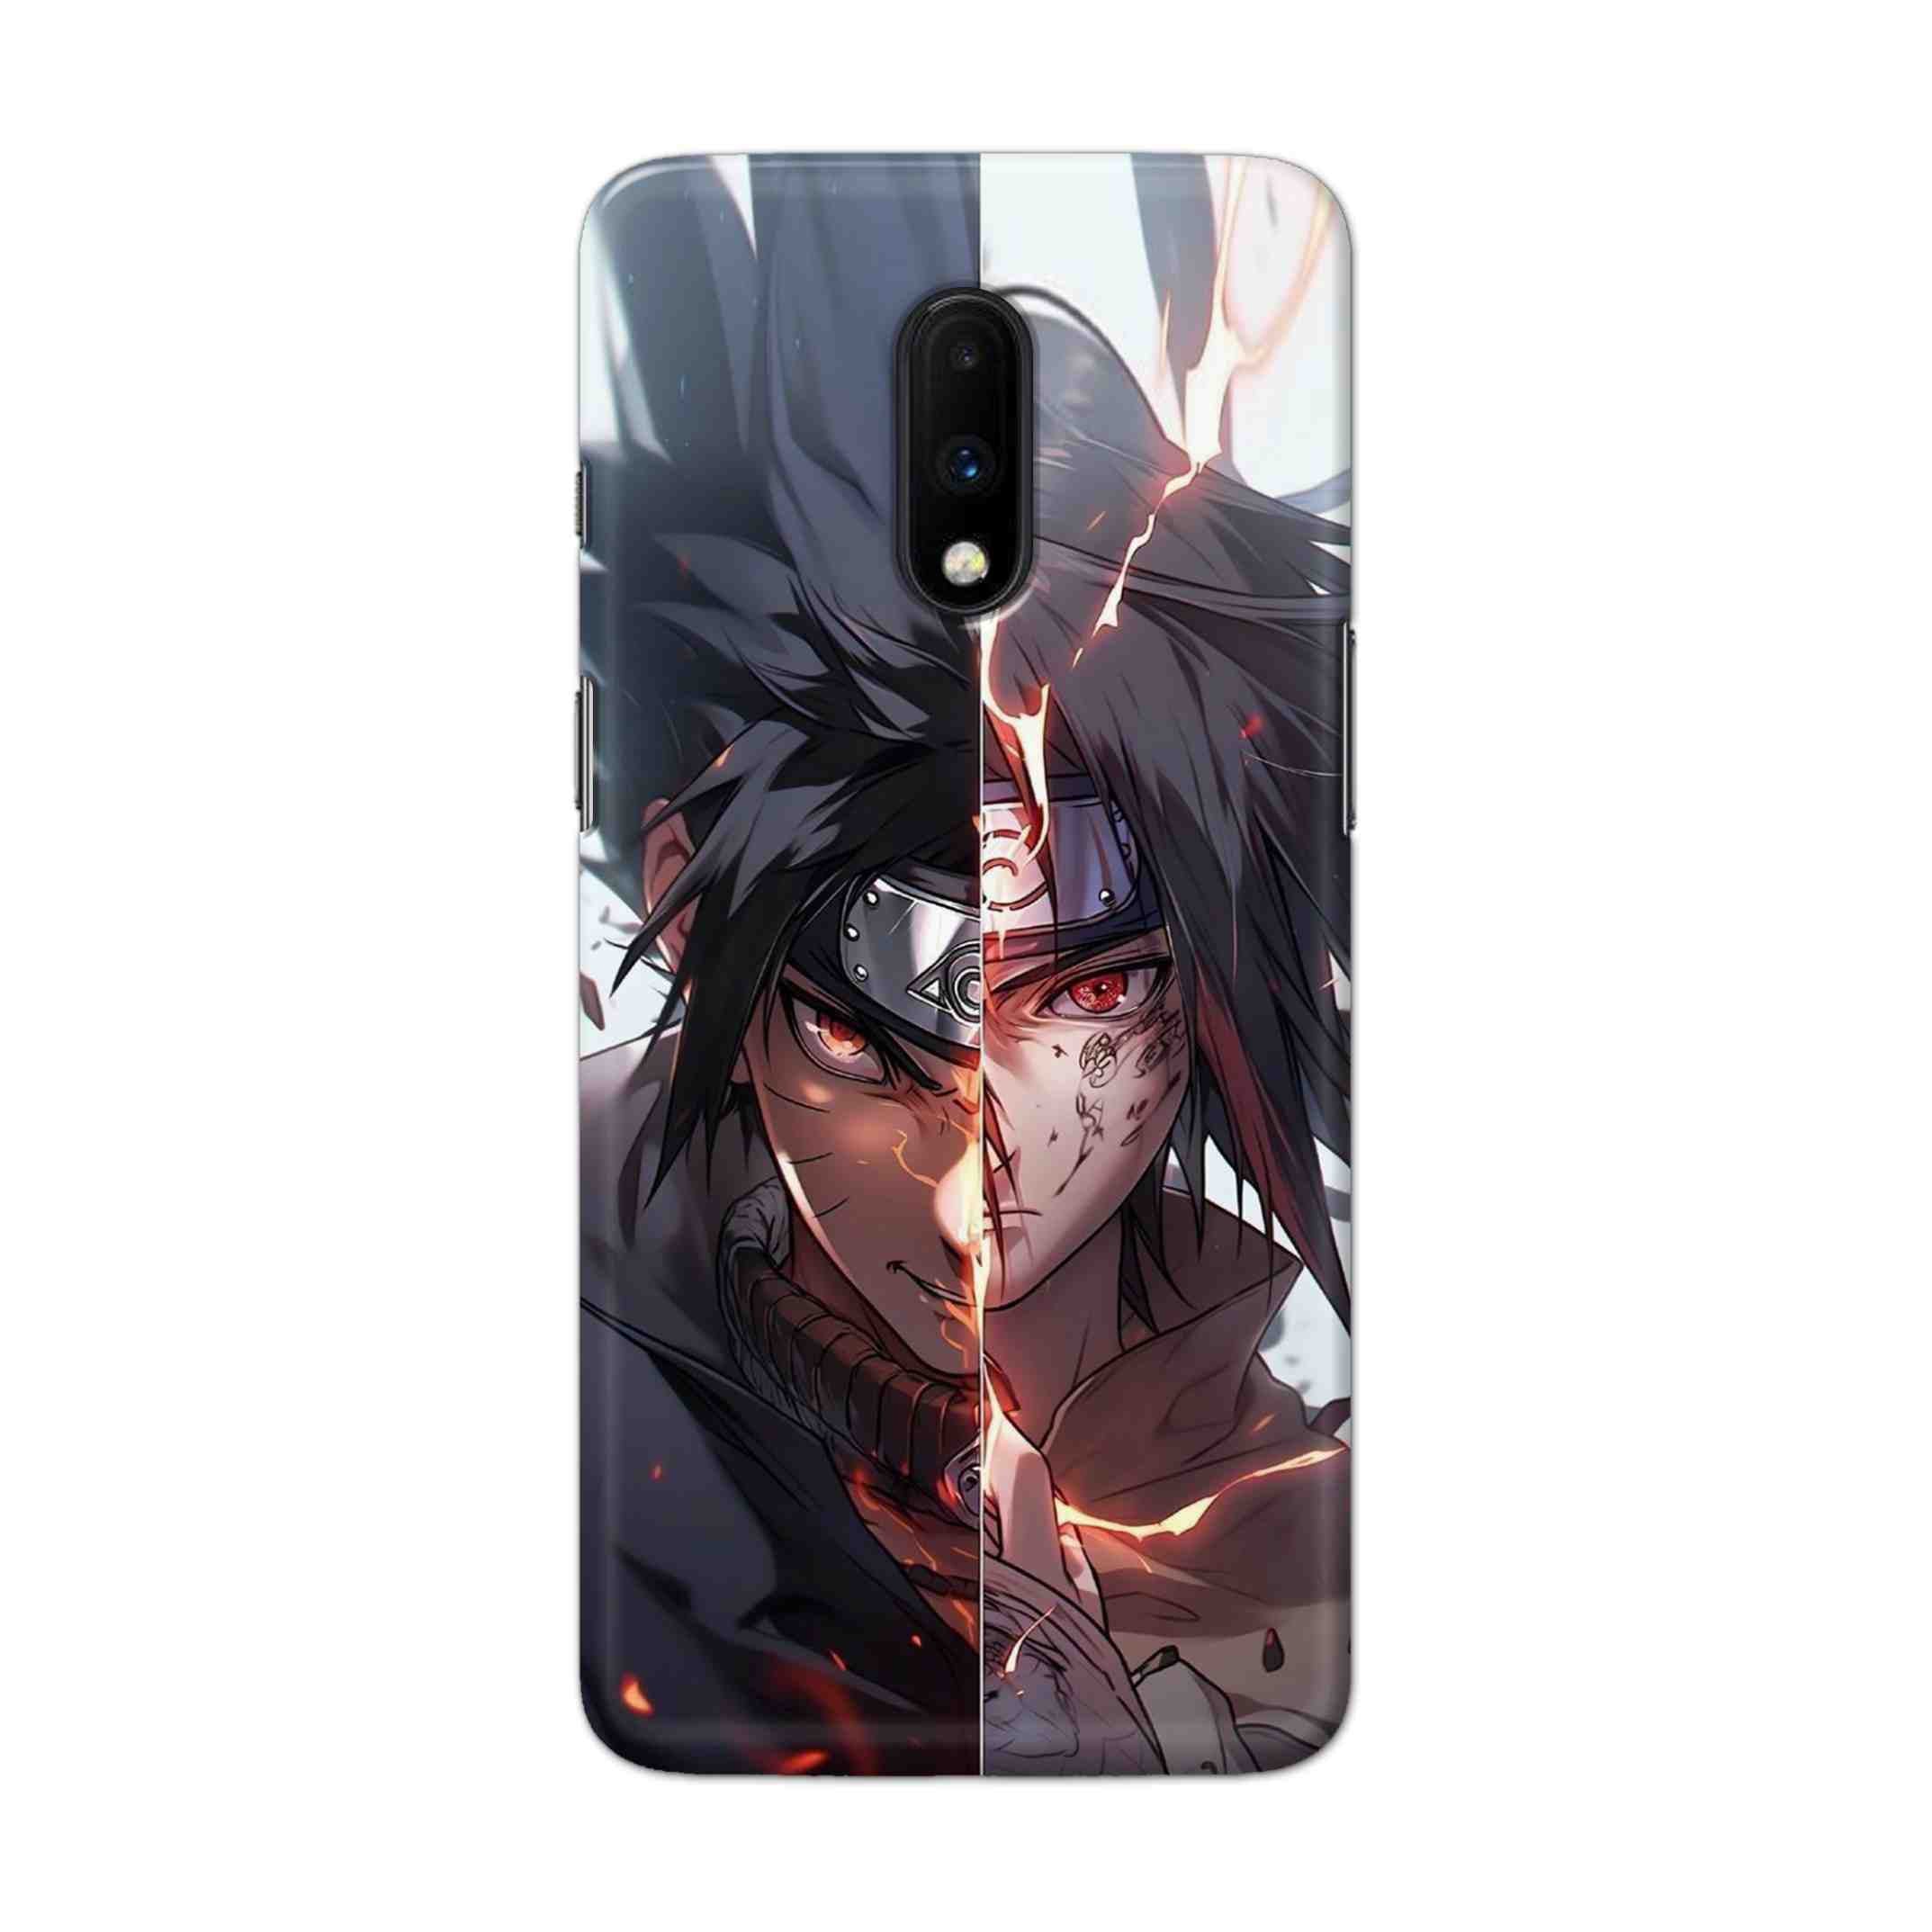 Buy Hitach Vs Kakachi Hard Back Mobile Phone Case Cover For OnePlus 7 Online